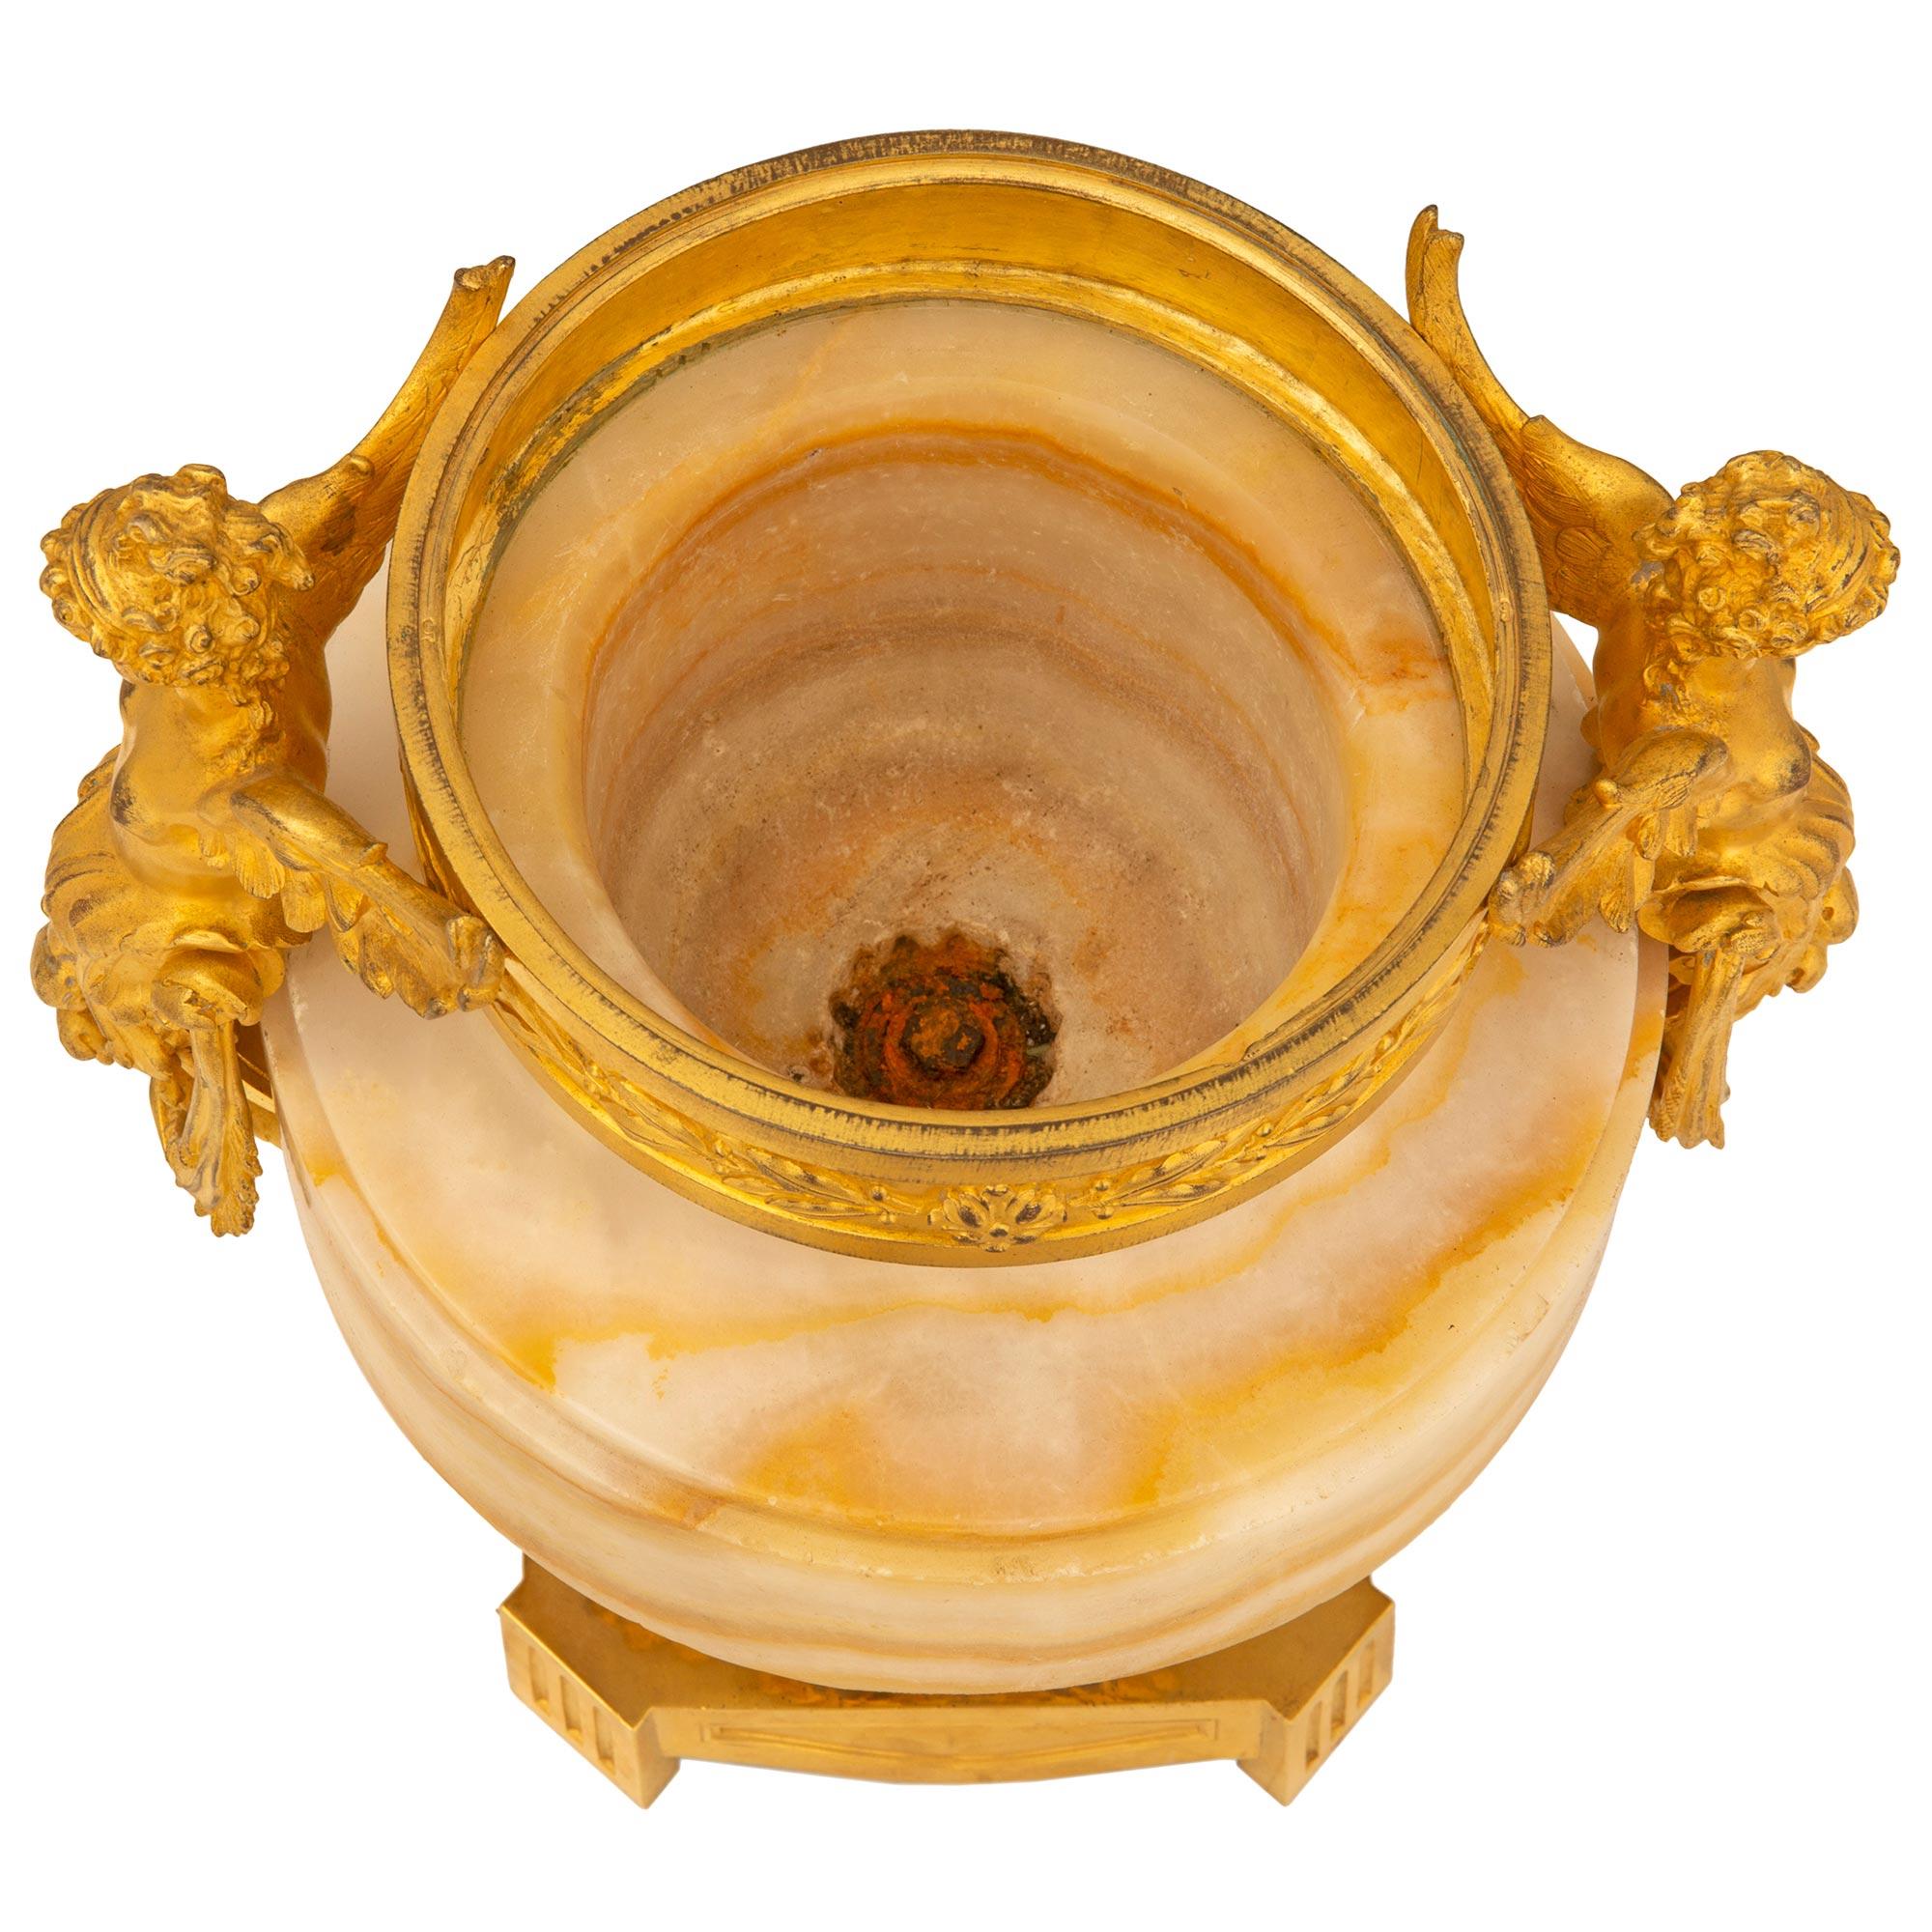 Une urne en onyx et en bronze doré de très haute qualité, de style Louis XVI et d'époque Belle Époque. L'urne est surélevée par une élégante base carrée en bronze doré, avec des coins coupés et cannelés, des côtés en forme d'arbalète, une bande